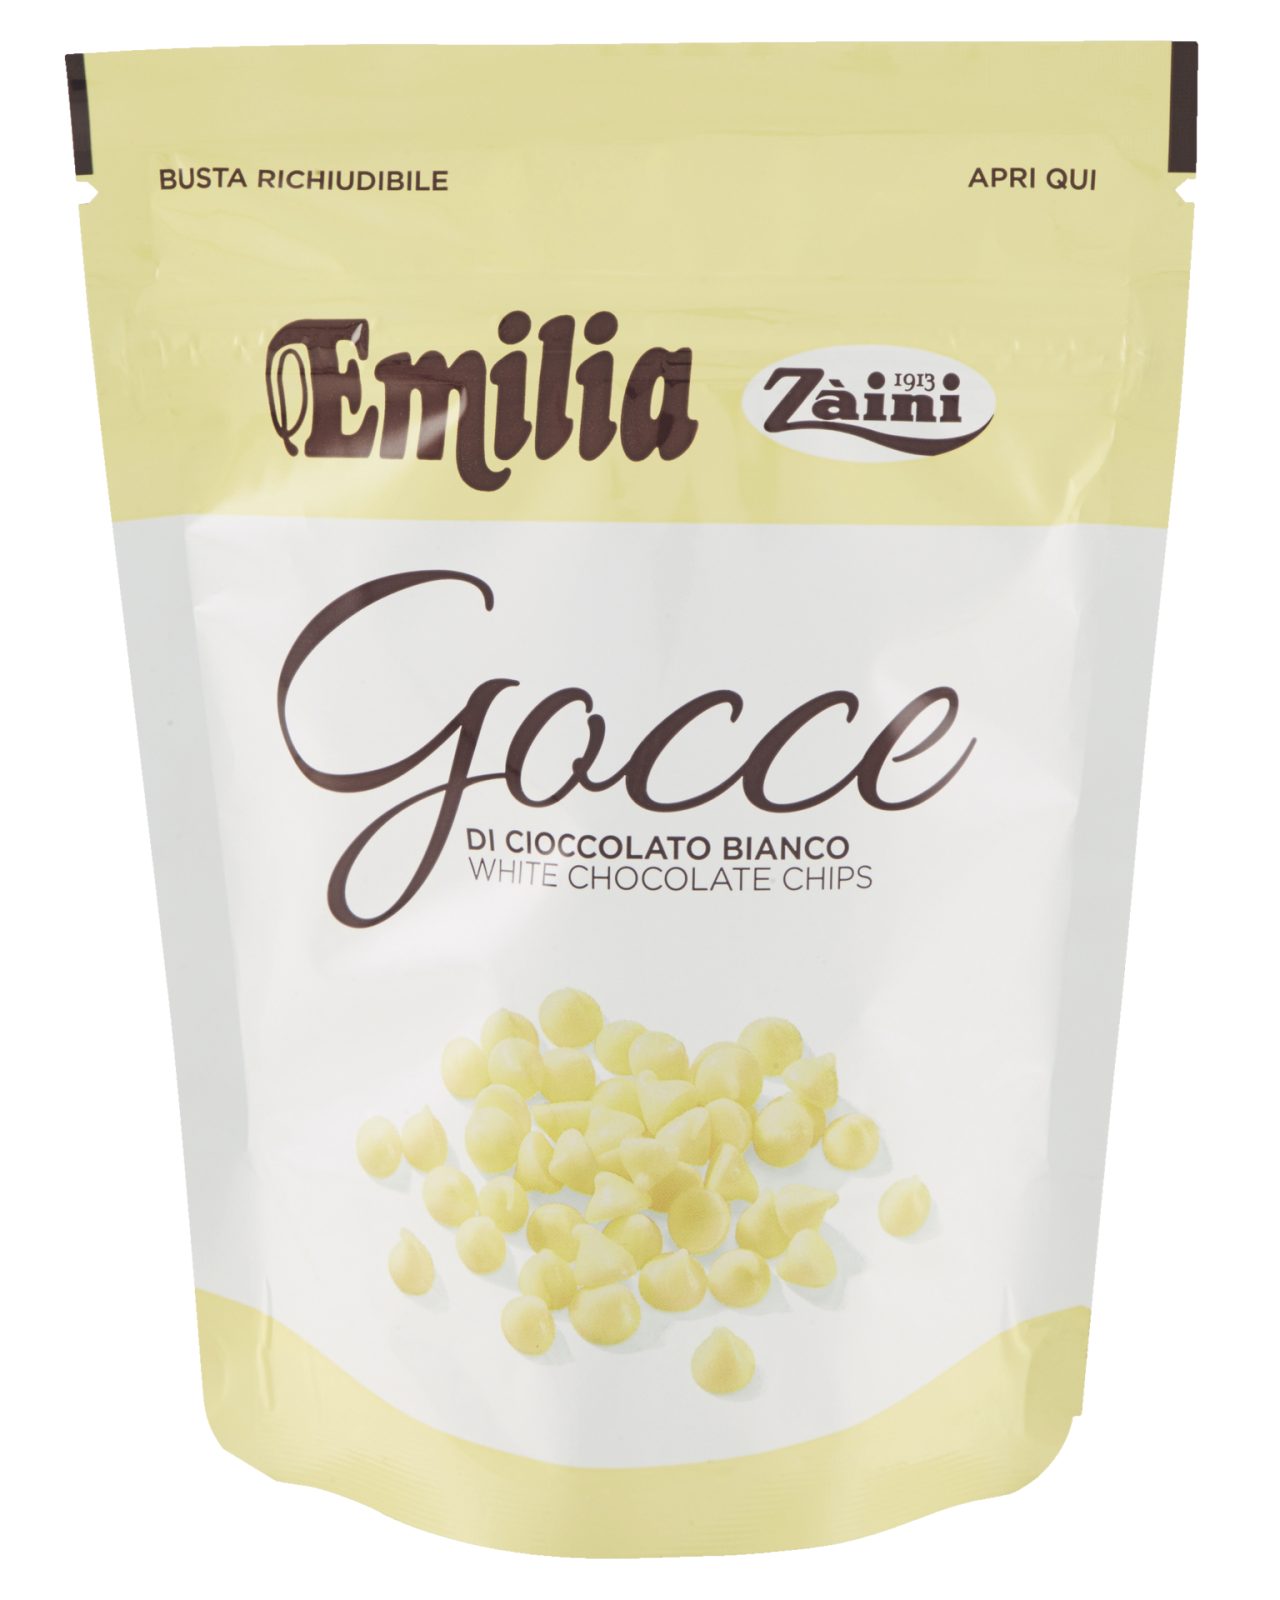 Gocce di Cioccolato Bianco Emilia